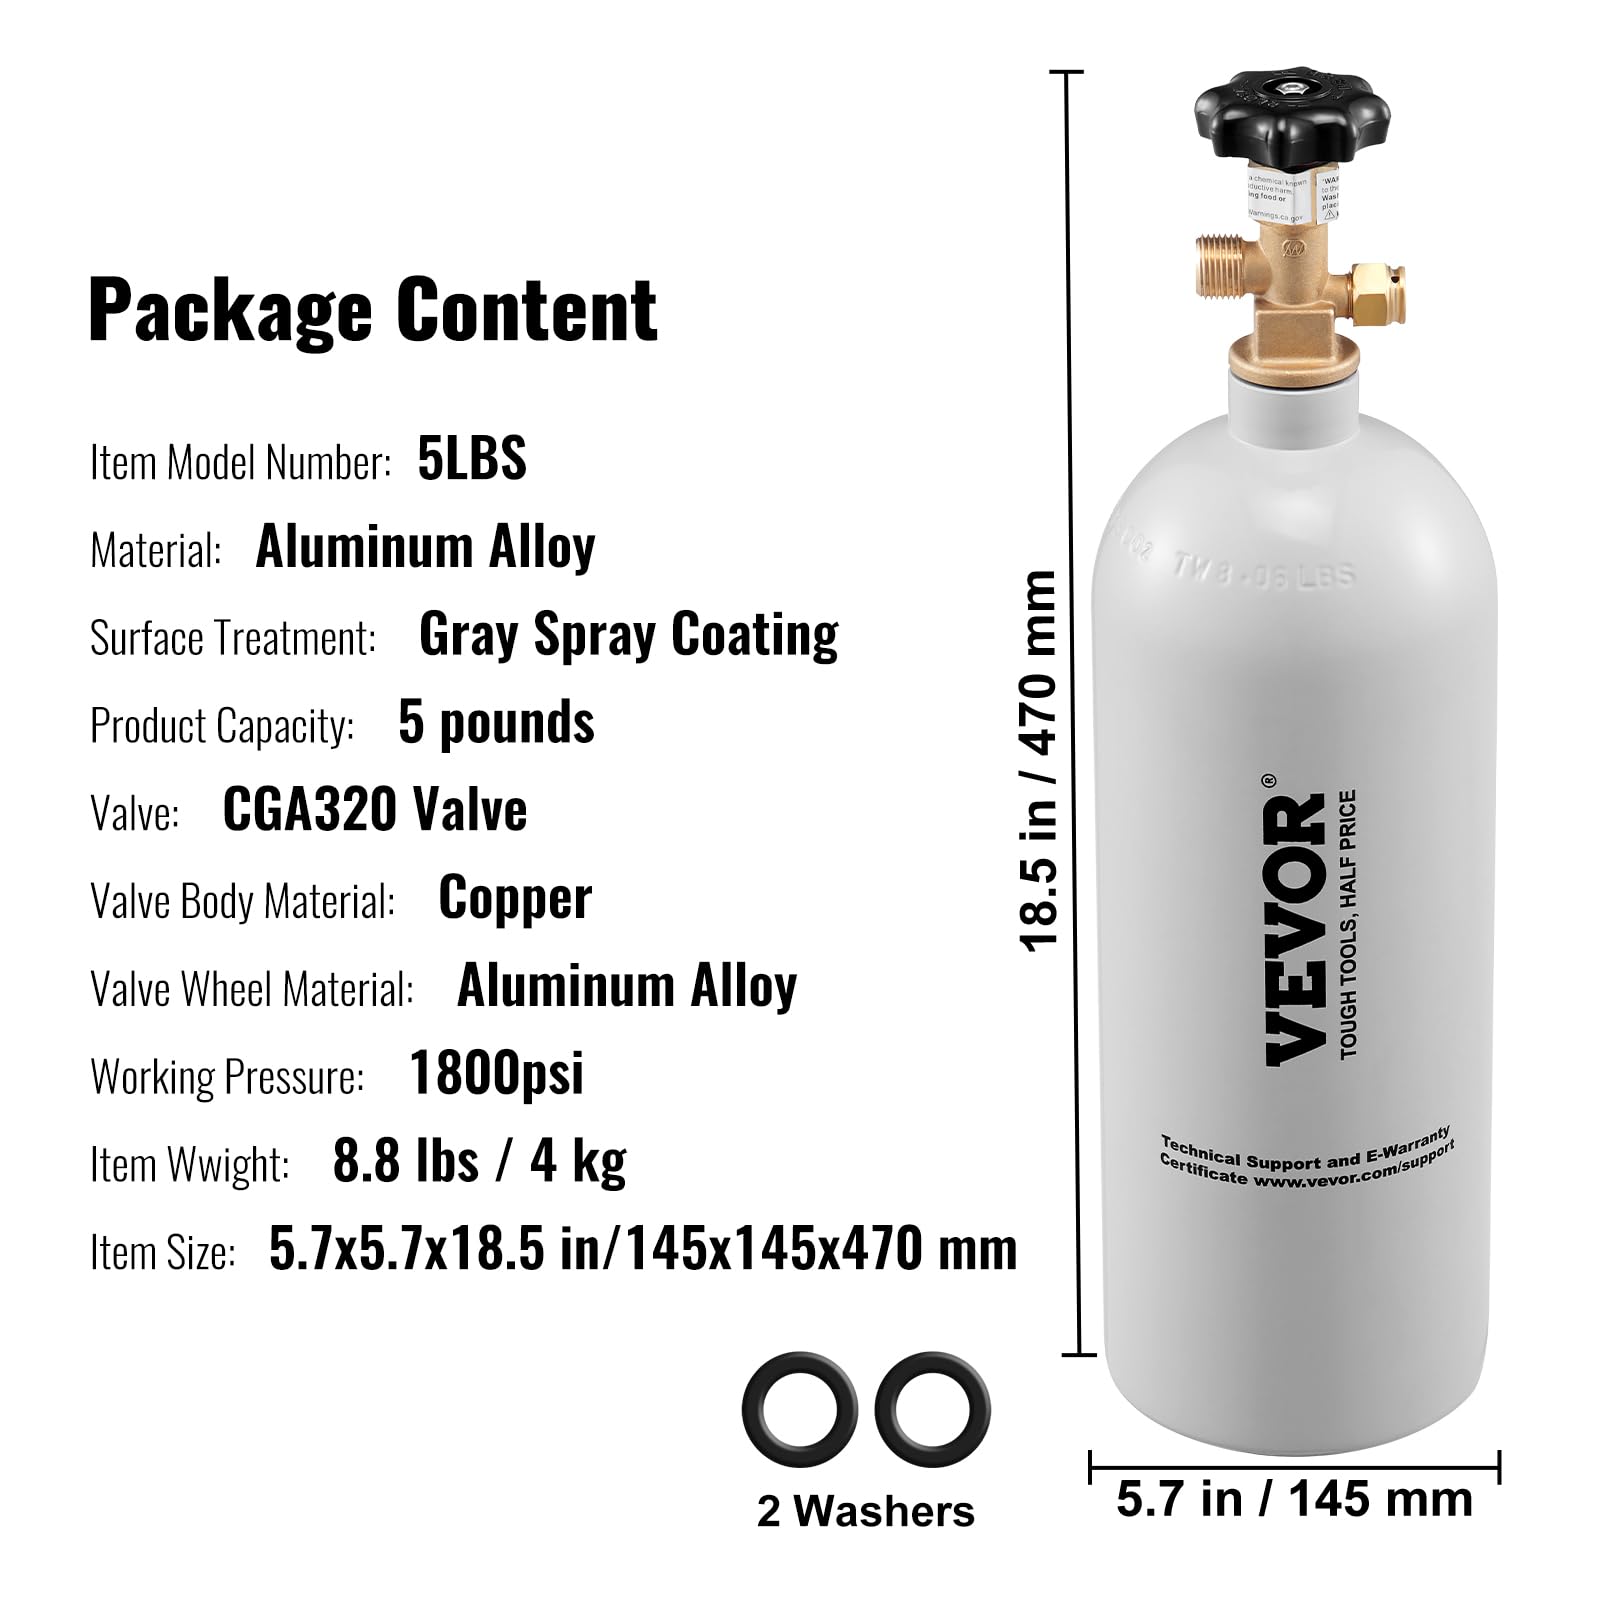 VEVOR CO2 Regulator Gauge with 0-60PSI, Heavy Duty CO2 Gauge Gas System, Draft Beer Regulator with Adjustable Pressure Regulator, Check Valve for Draft Beer Homebrew (5 LBS CO2 Tank)